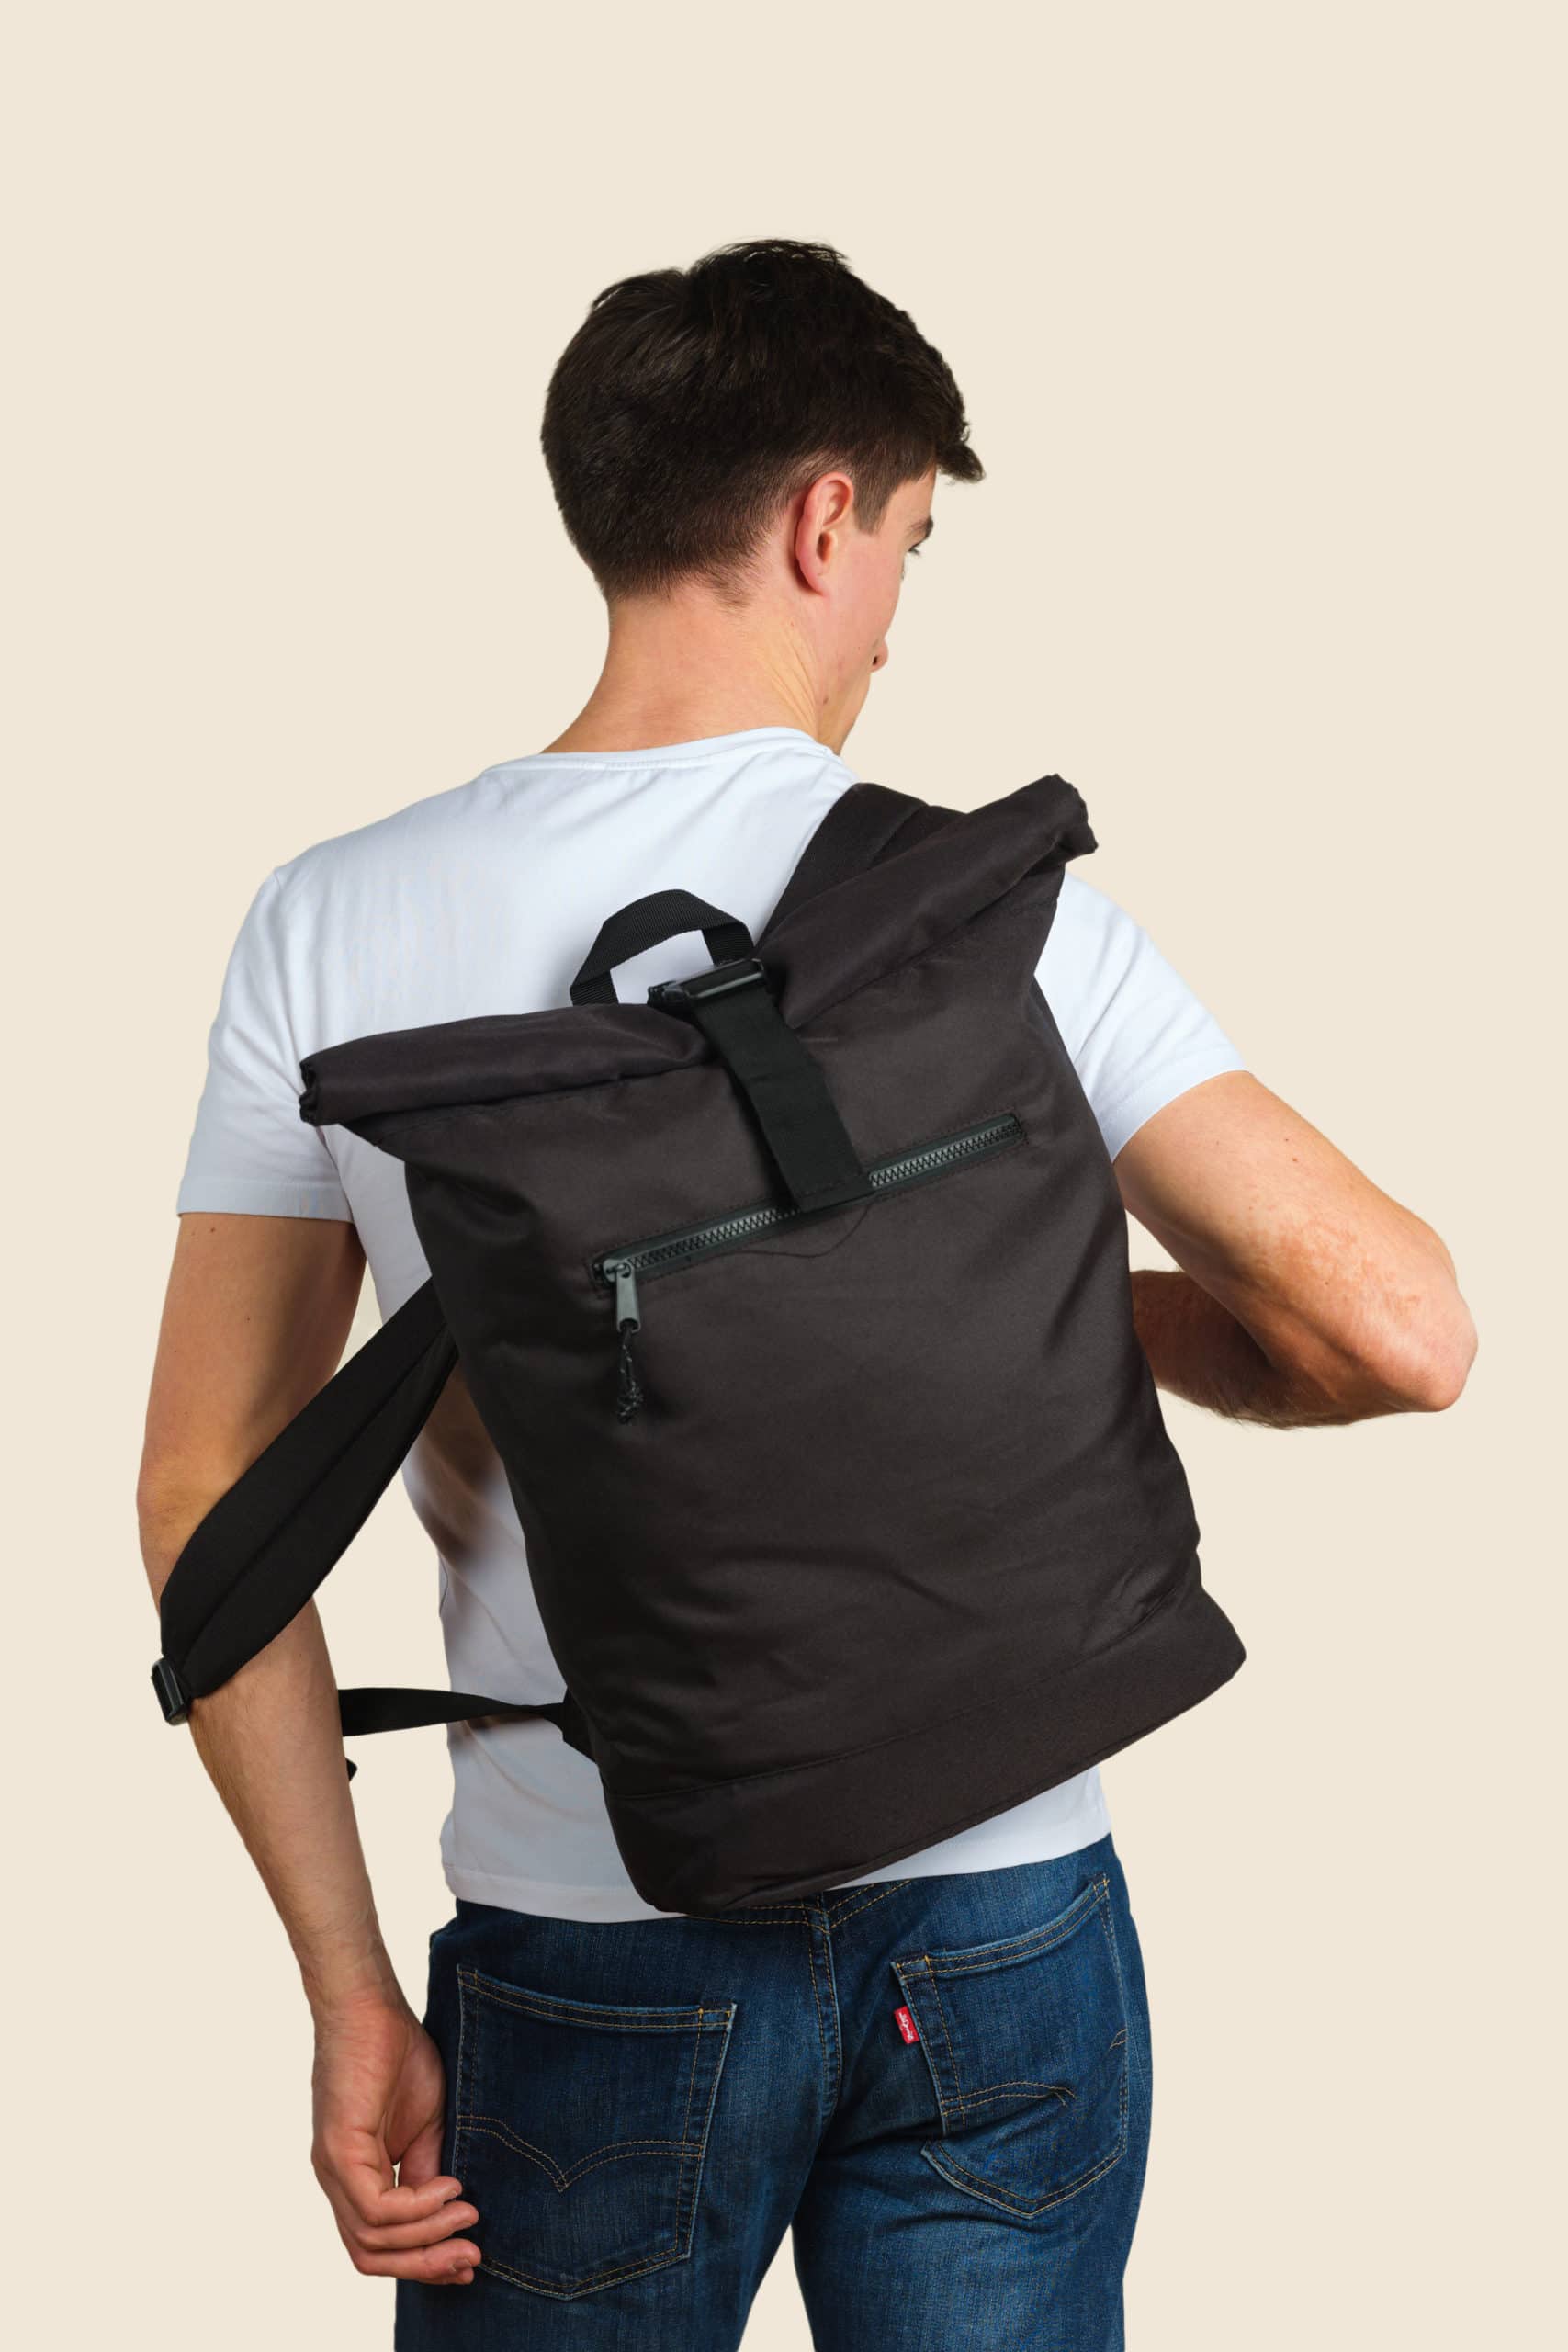 sac a dos polyester recyclé personnalisé - Icone Design